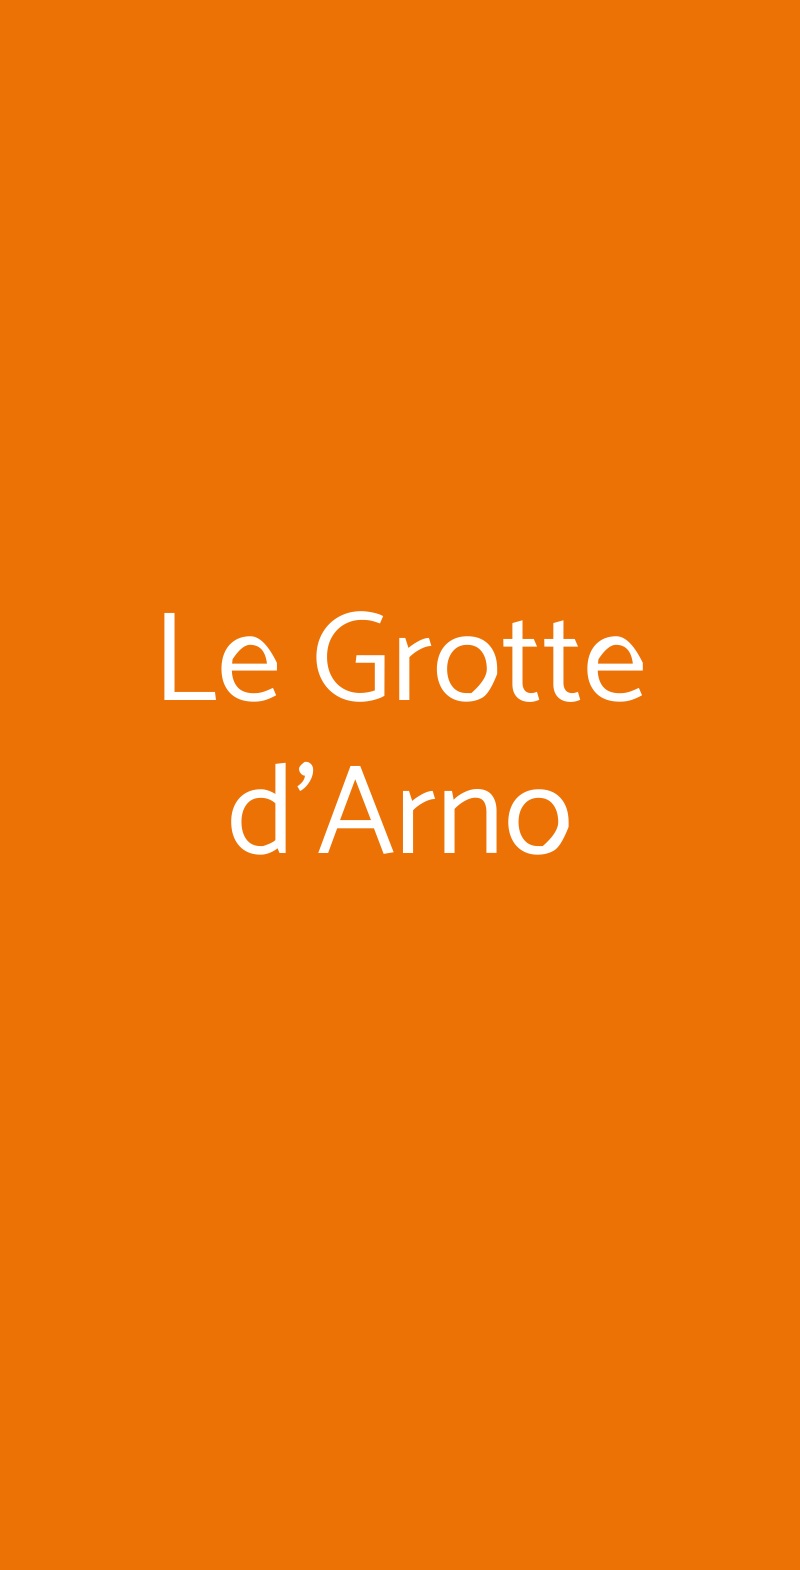 Le Grotte d'Arno Cerreto Guidi menù 1 pagina